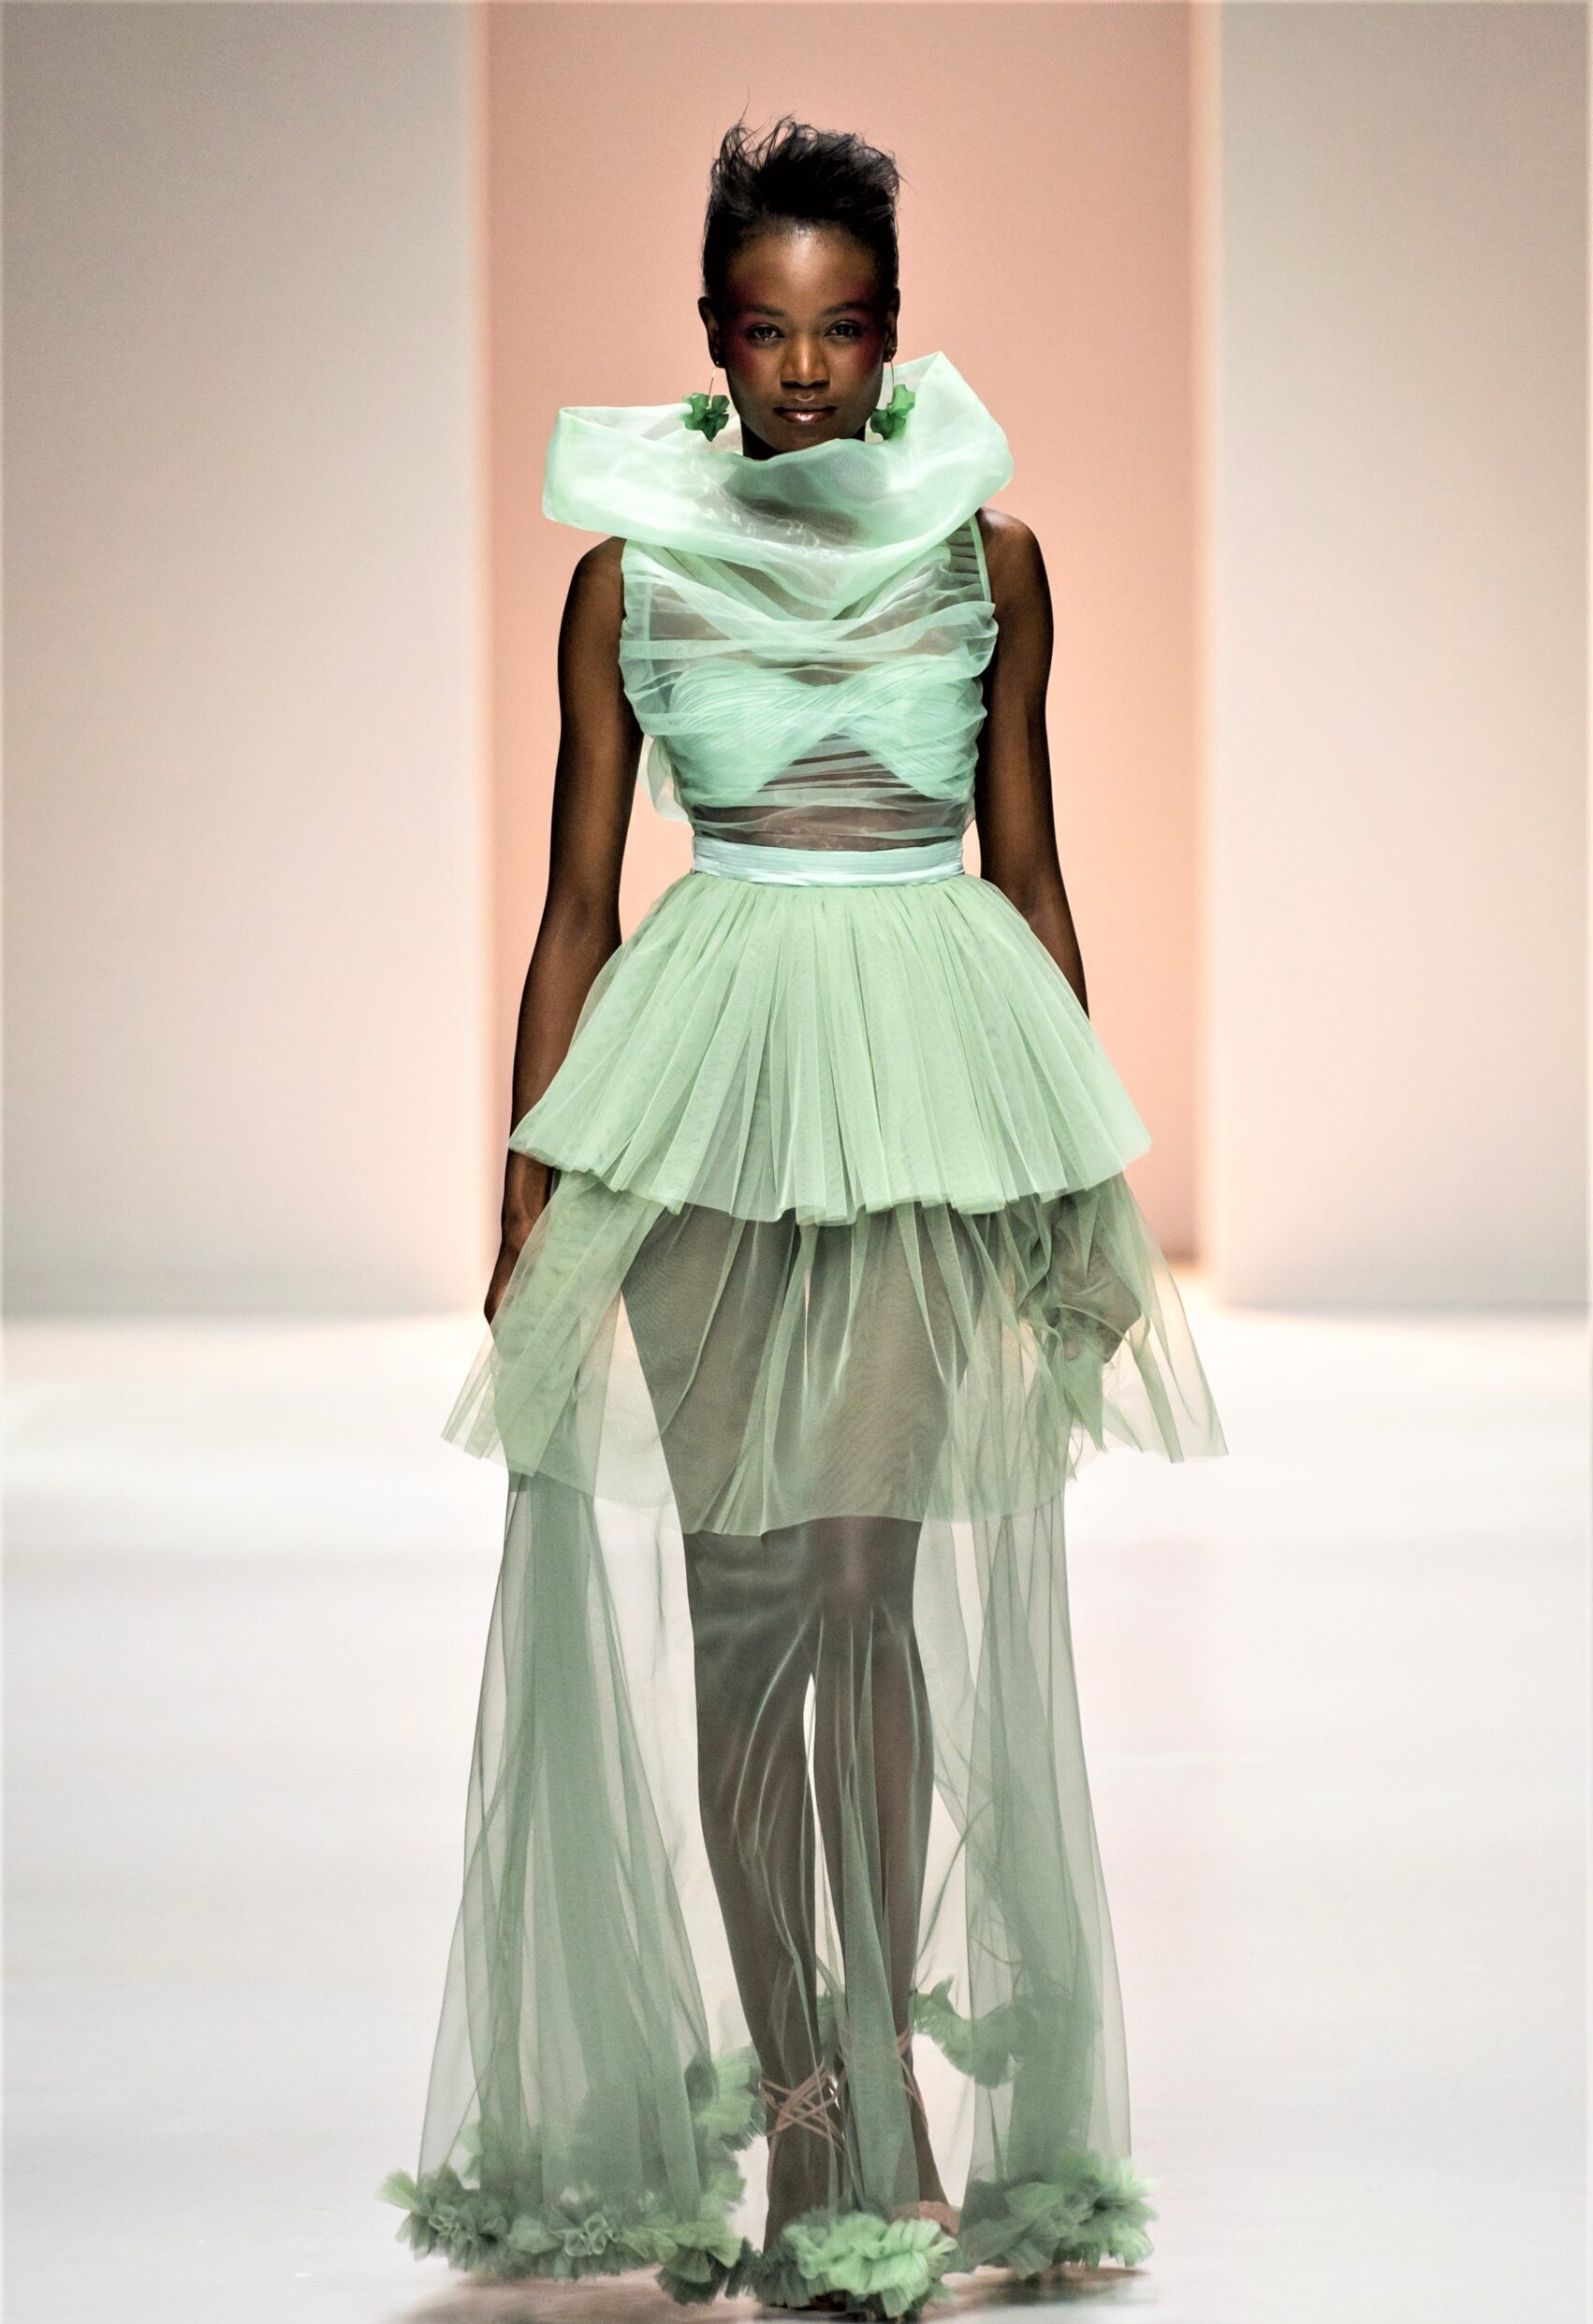 CNA Federmoda rinnova la collaborazione con la Mozambique Fashion Week